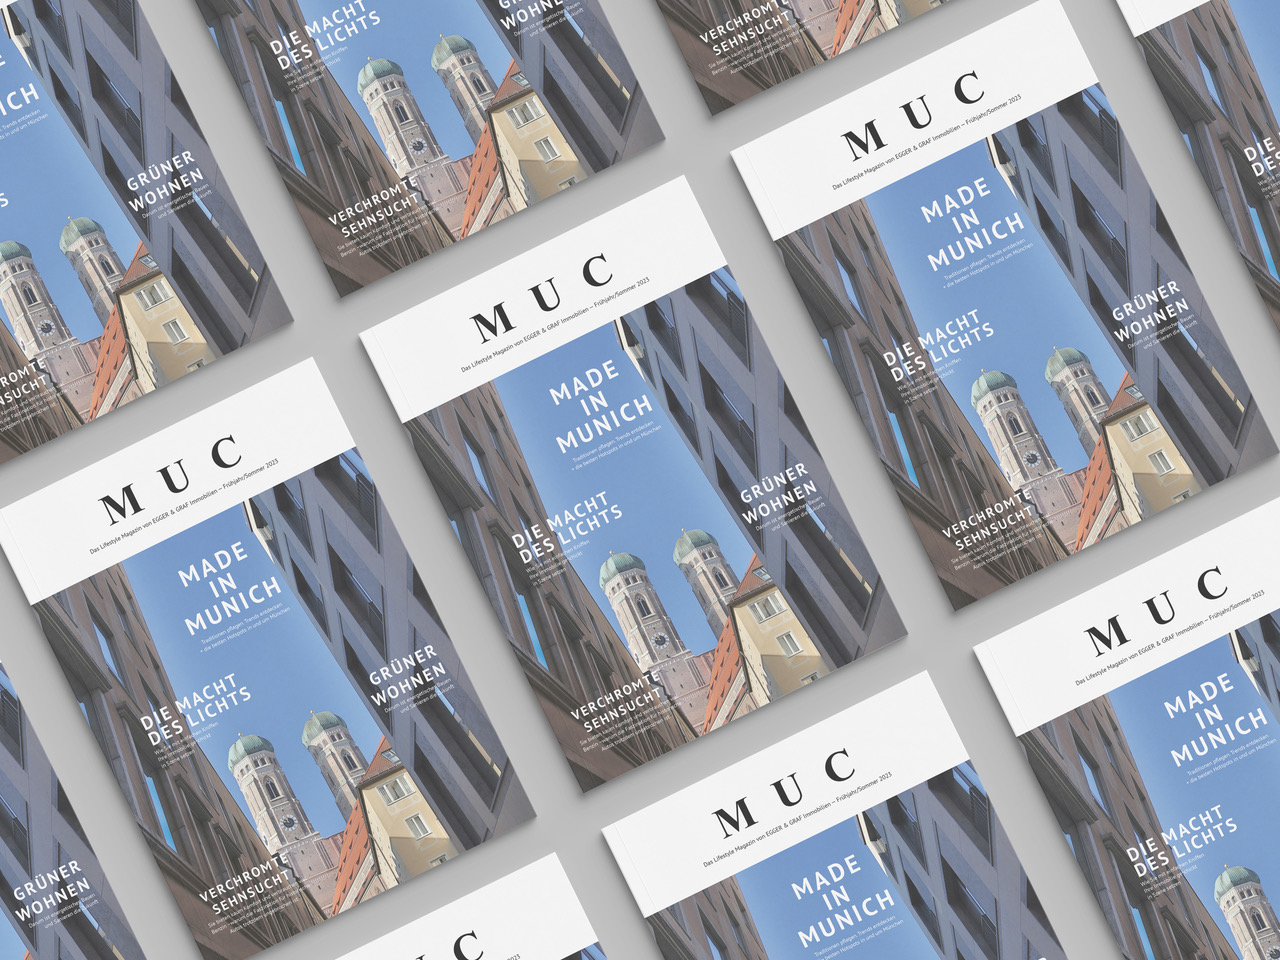 MUC Magazin - 1. Ausgabe lesen. Immobilien Marketing Beispiele